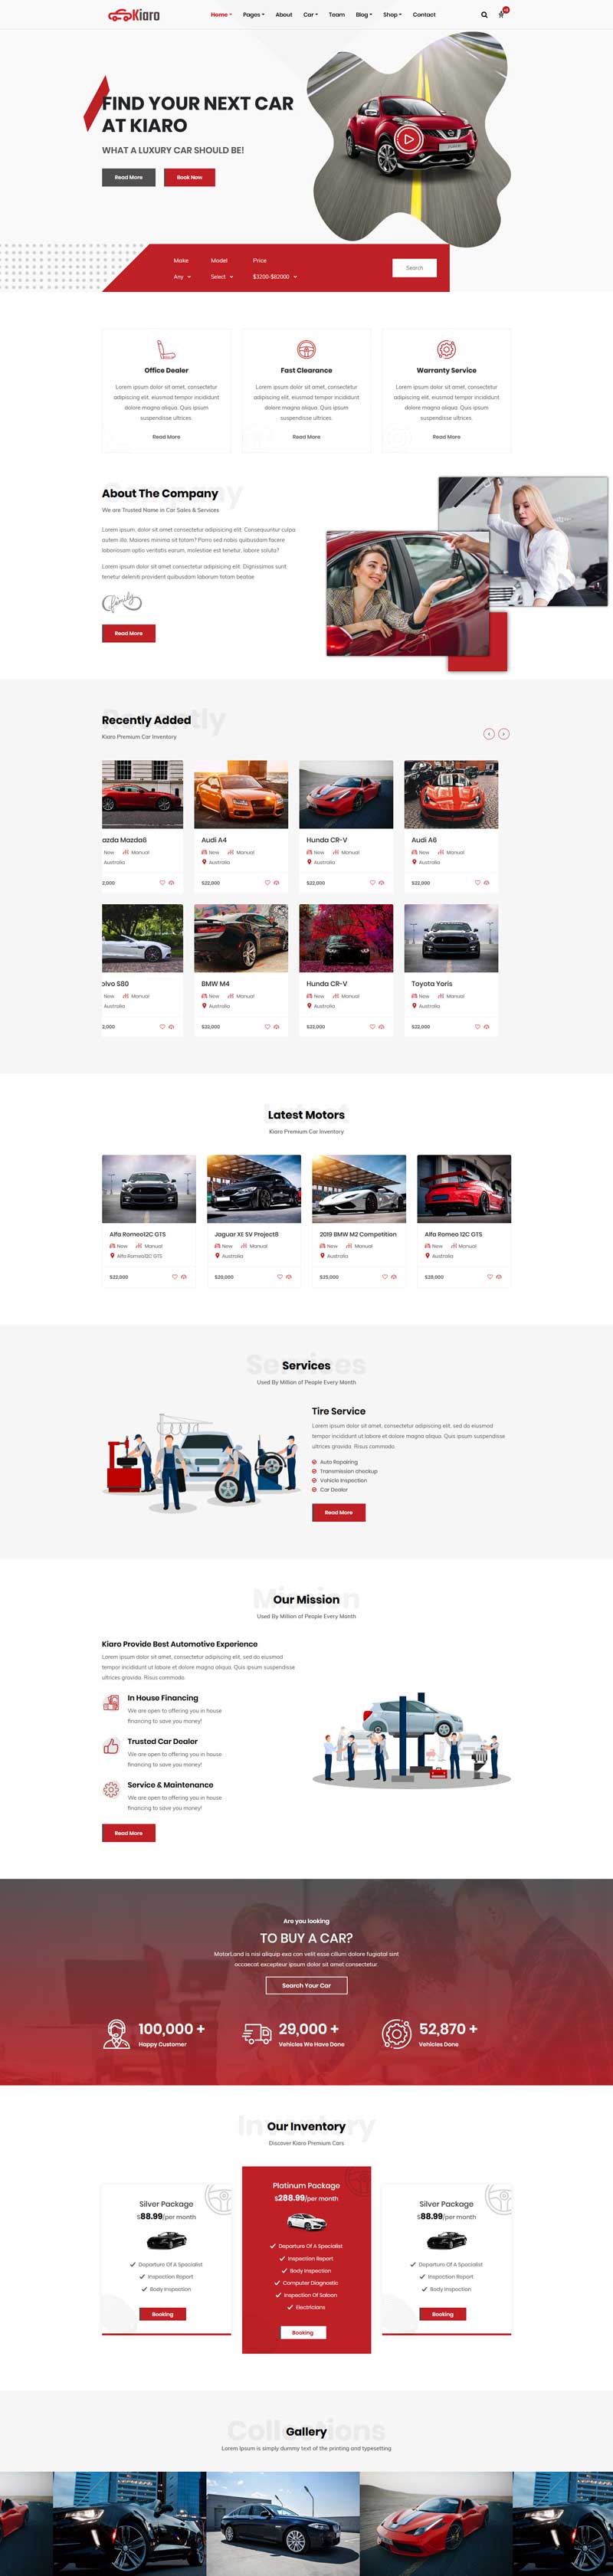 品牌汽车销售服务企业HTML模板